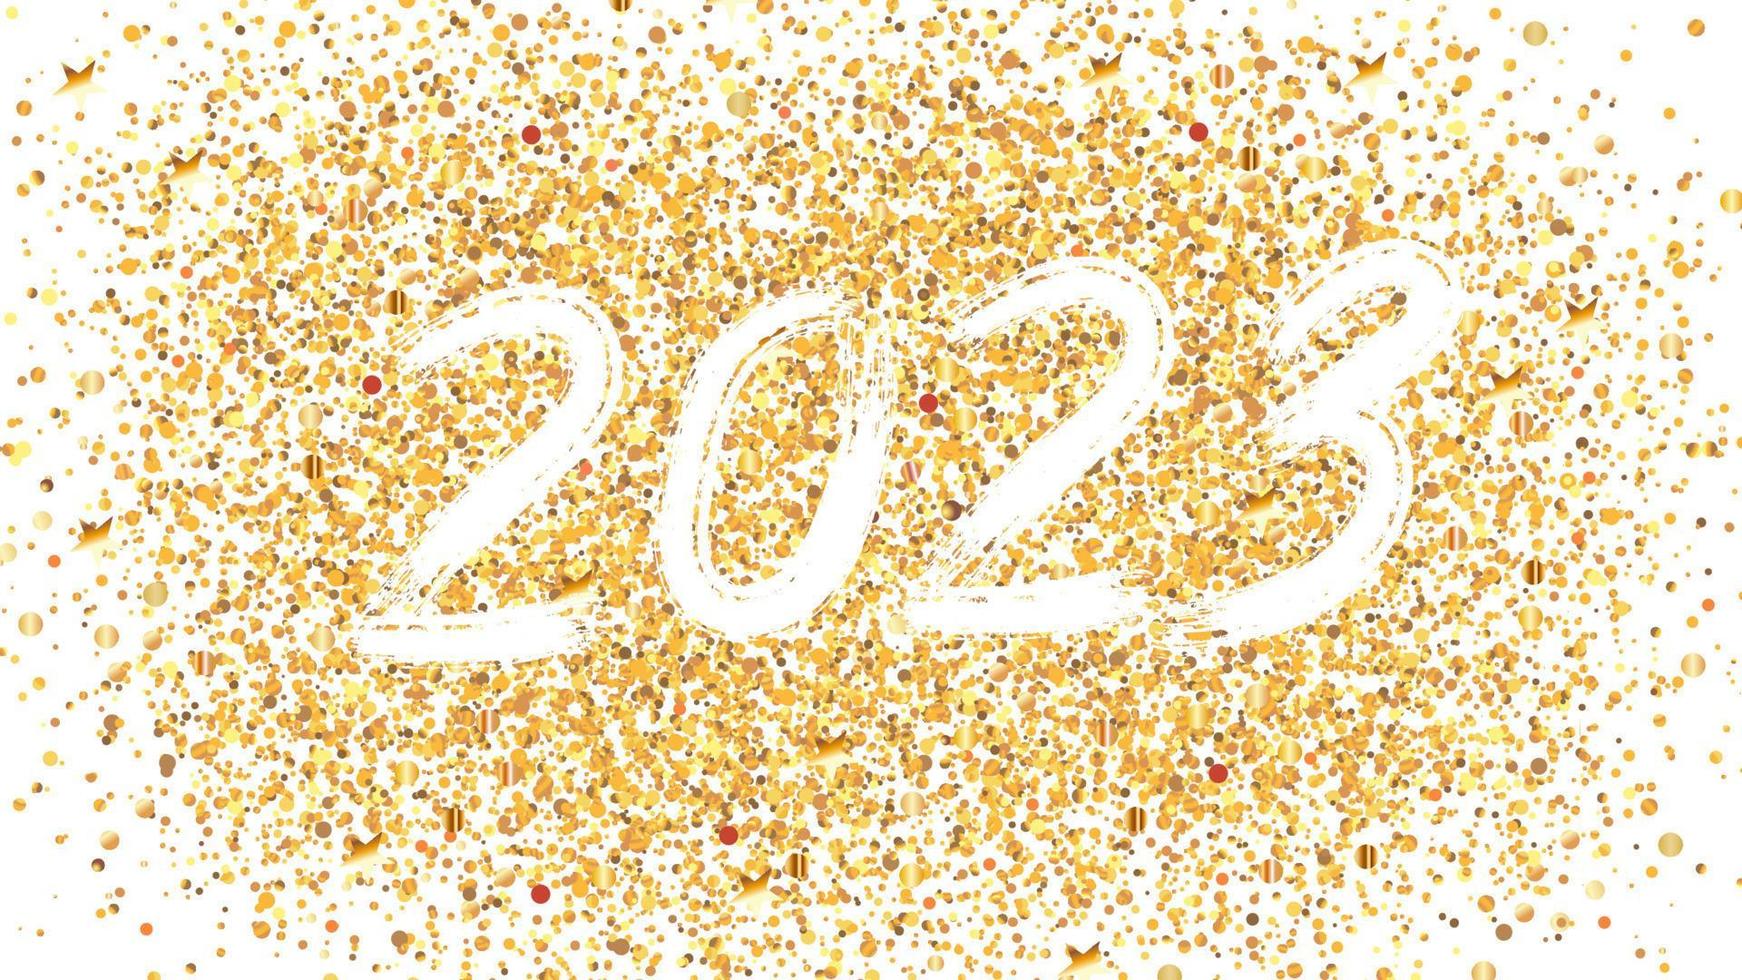 penselnummer 2023 för det nya året. vita siffror på guldbas. mall för vykort, utskrifter, inbjudningar, etiketter. vektor illustration.